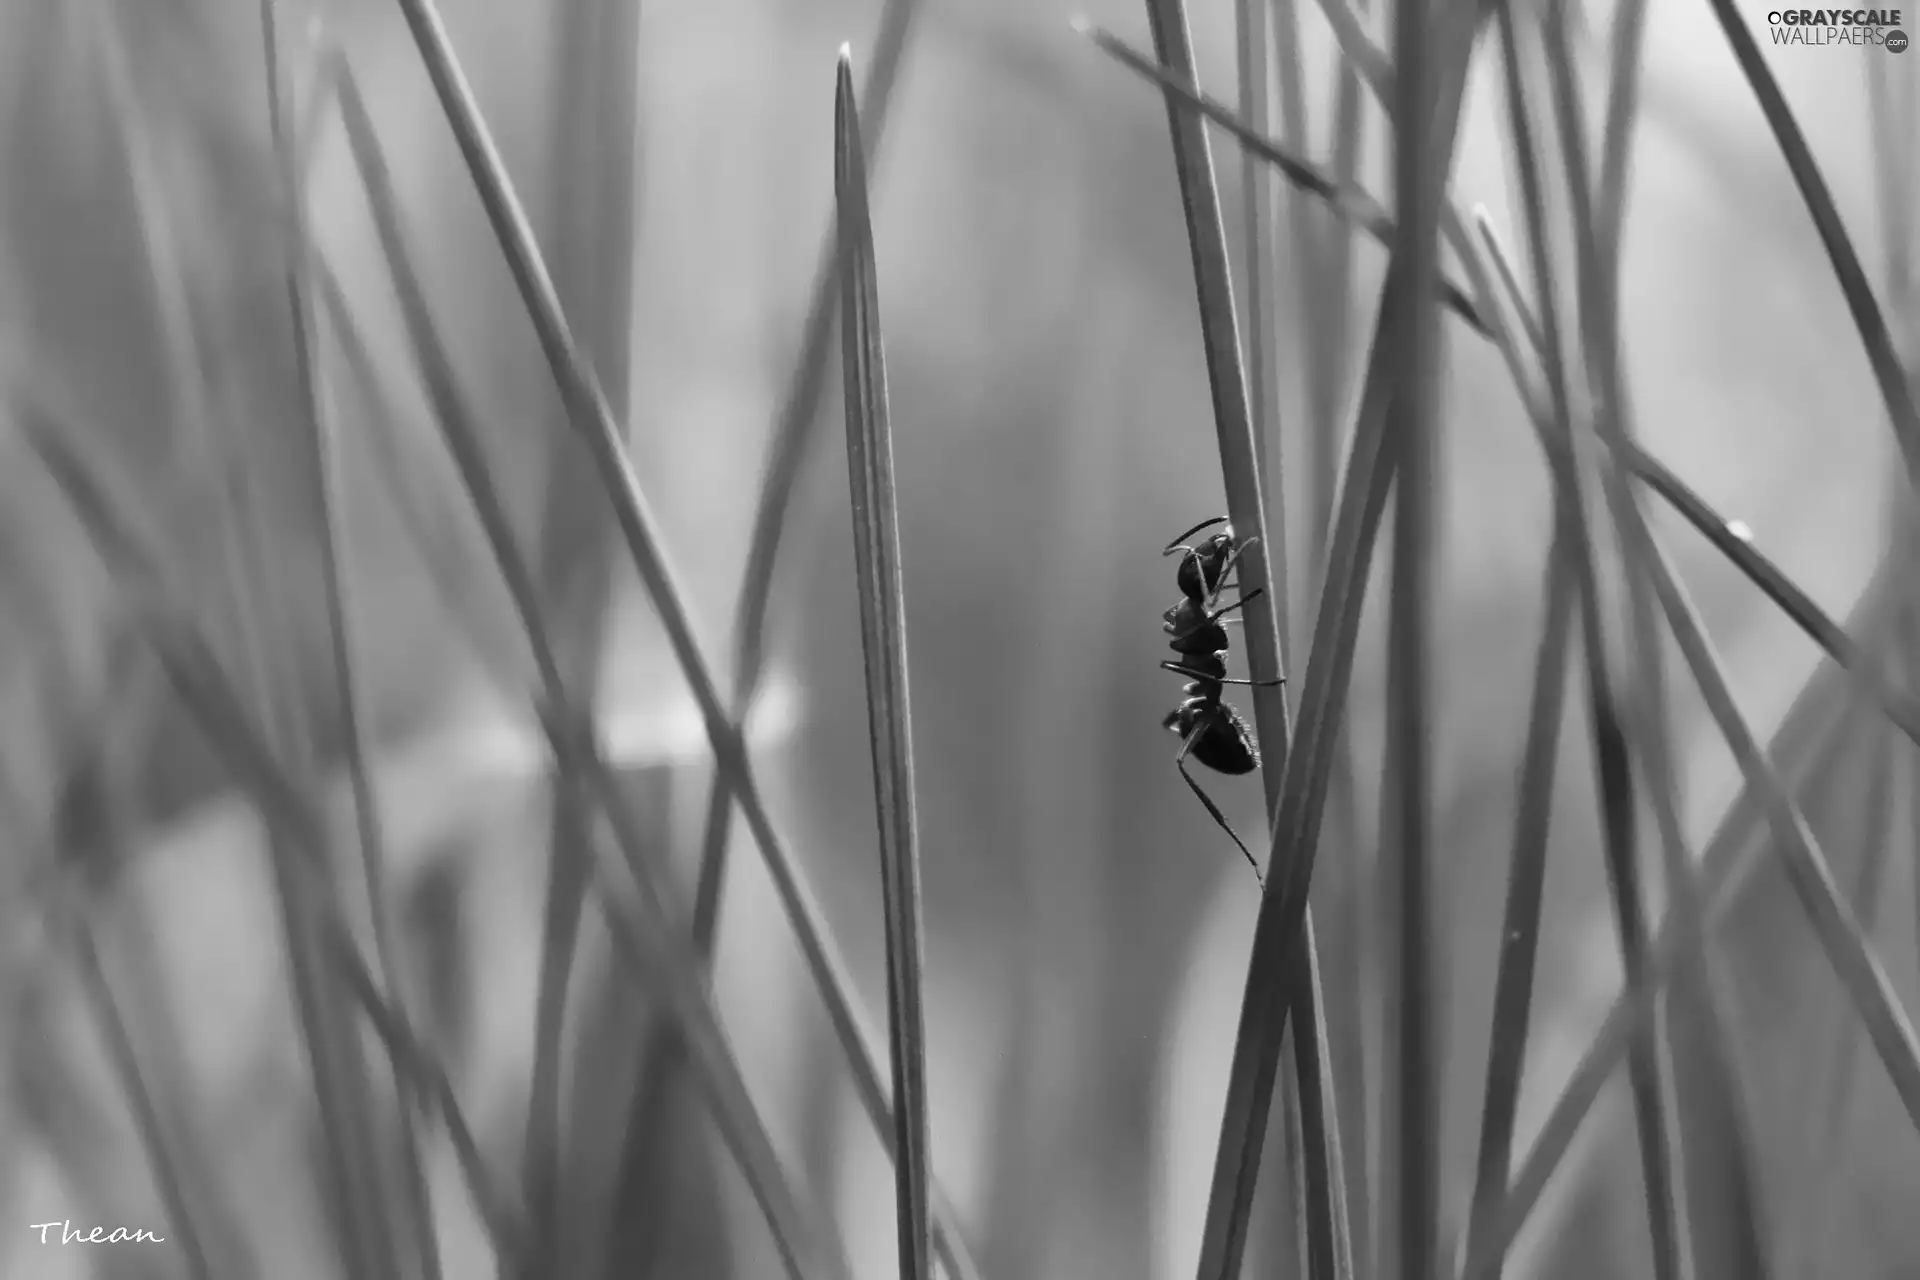 ant, stalk, grass, an